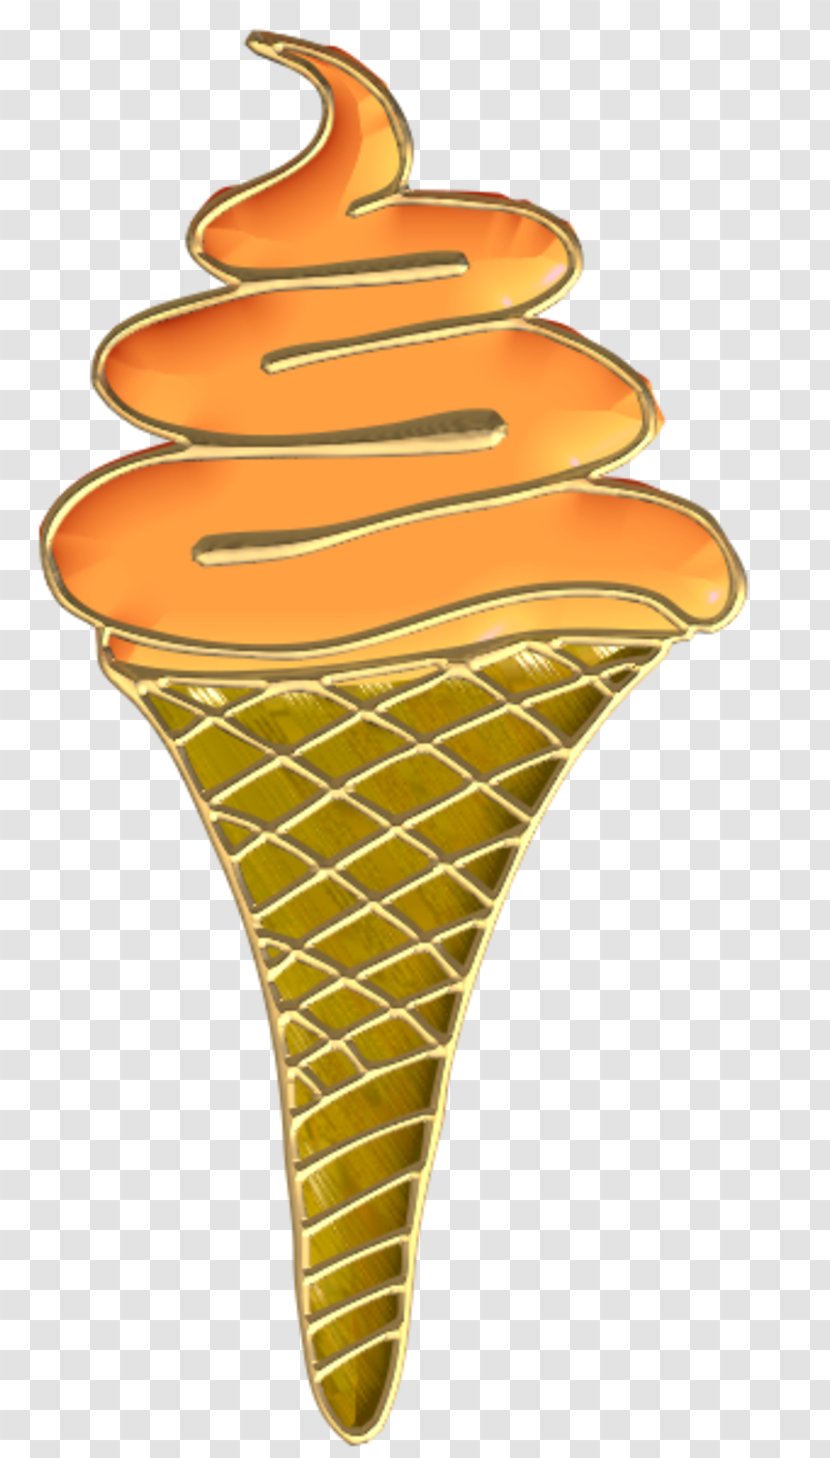 Ice Cream Cones Image Clip Art - Cone Transparent PNG